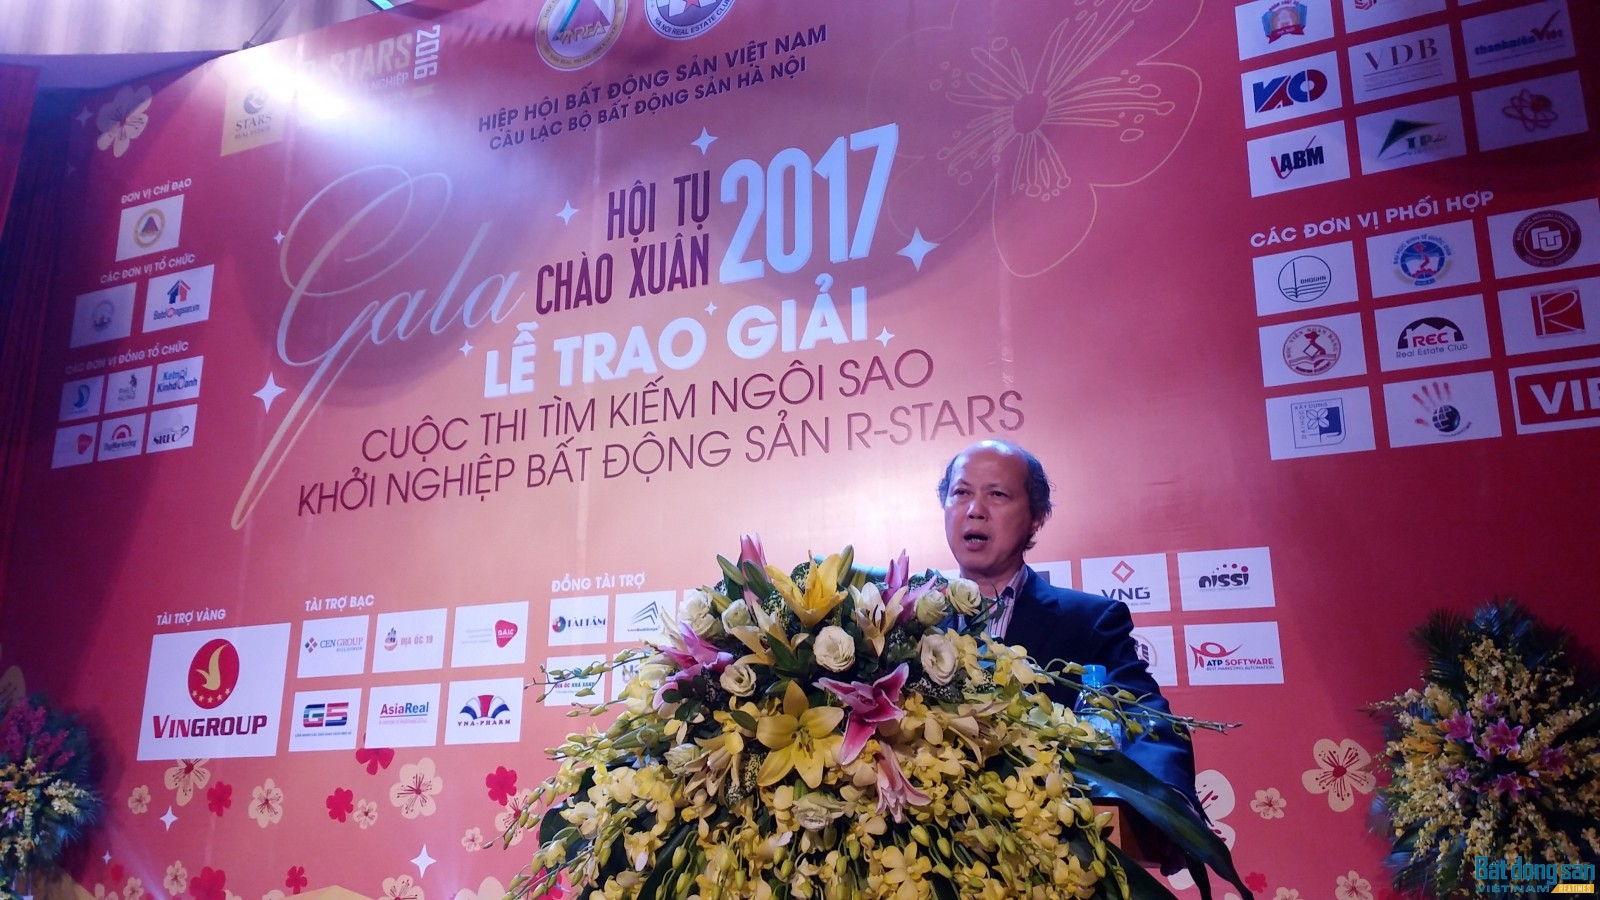 Ông Nguyễn Trần Nam, nguyên Thứ trưởng Bộ Xây dựng, Chủ tịch Hiệp hội BĐS Việt Nam dự và phát biểu tại buổi lễ. Ảnh: Tuấn Minh